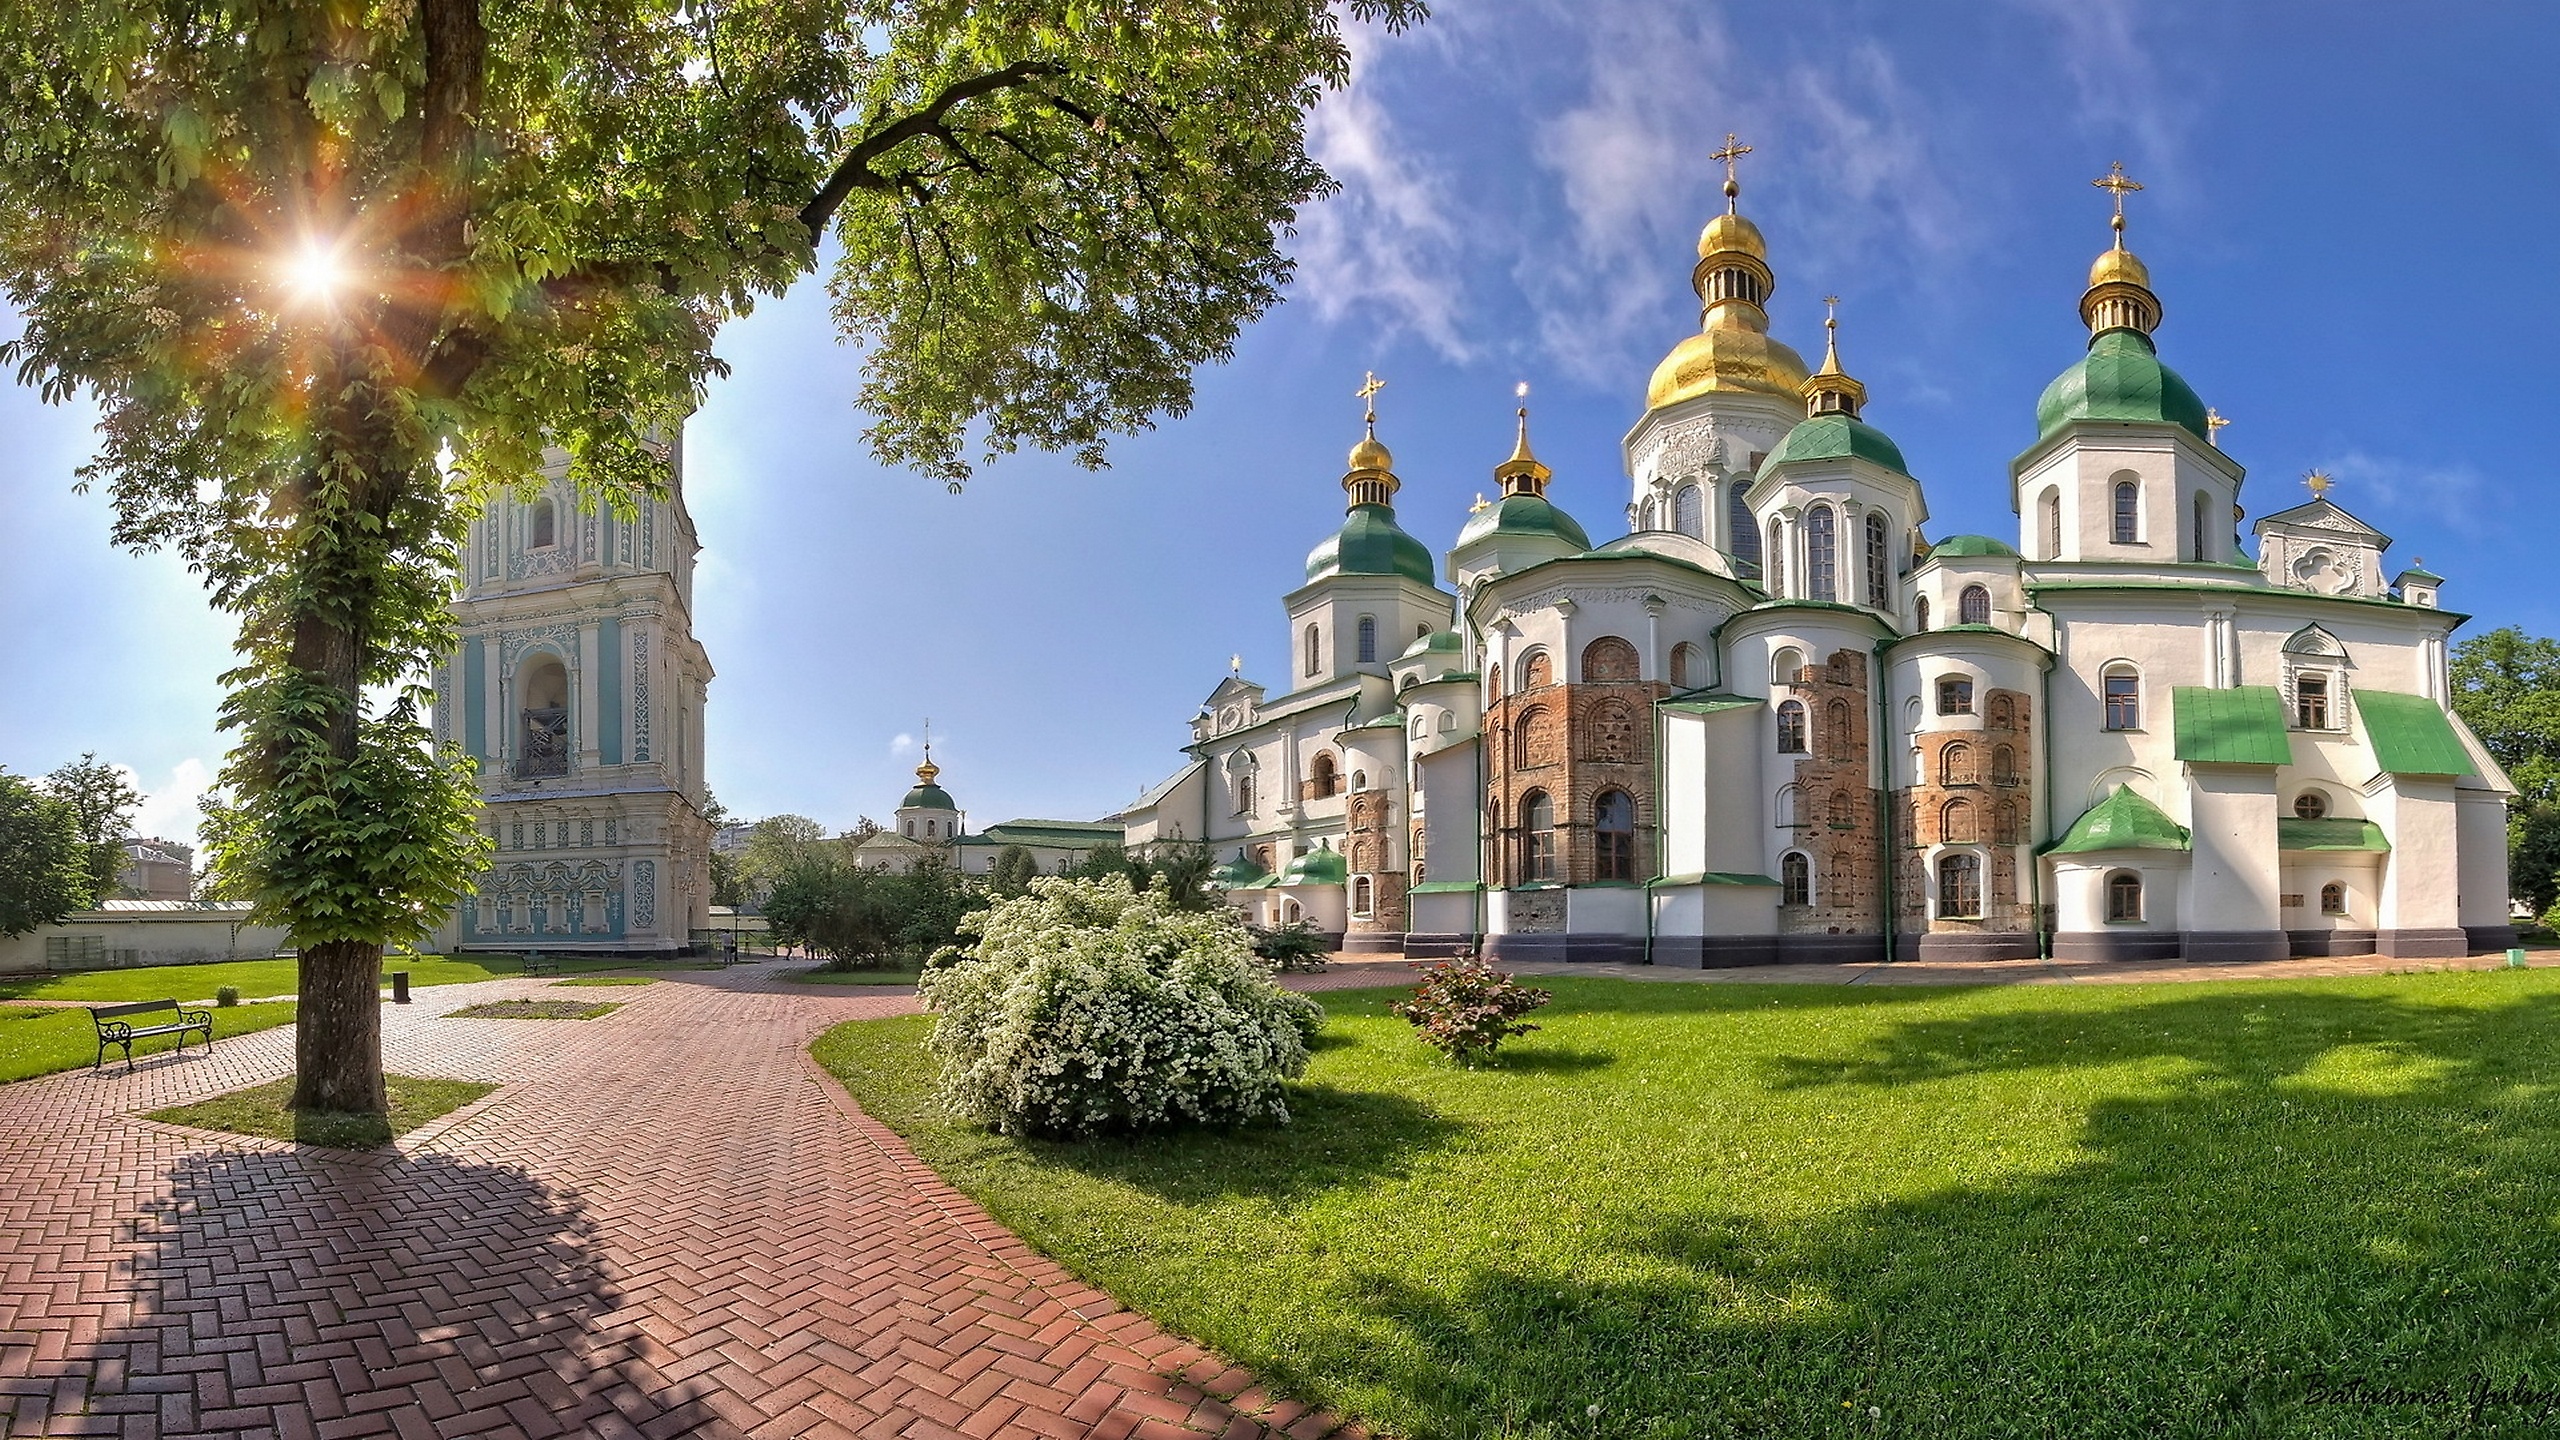 киевский собор святой софии